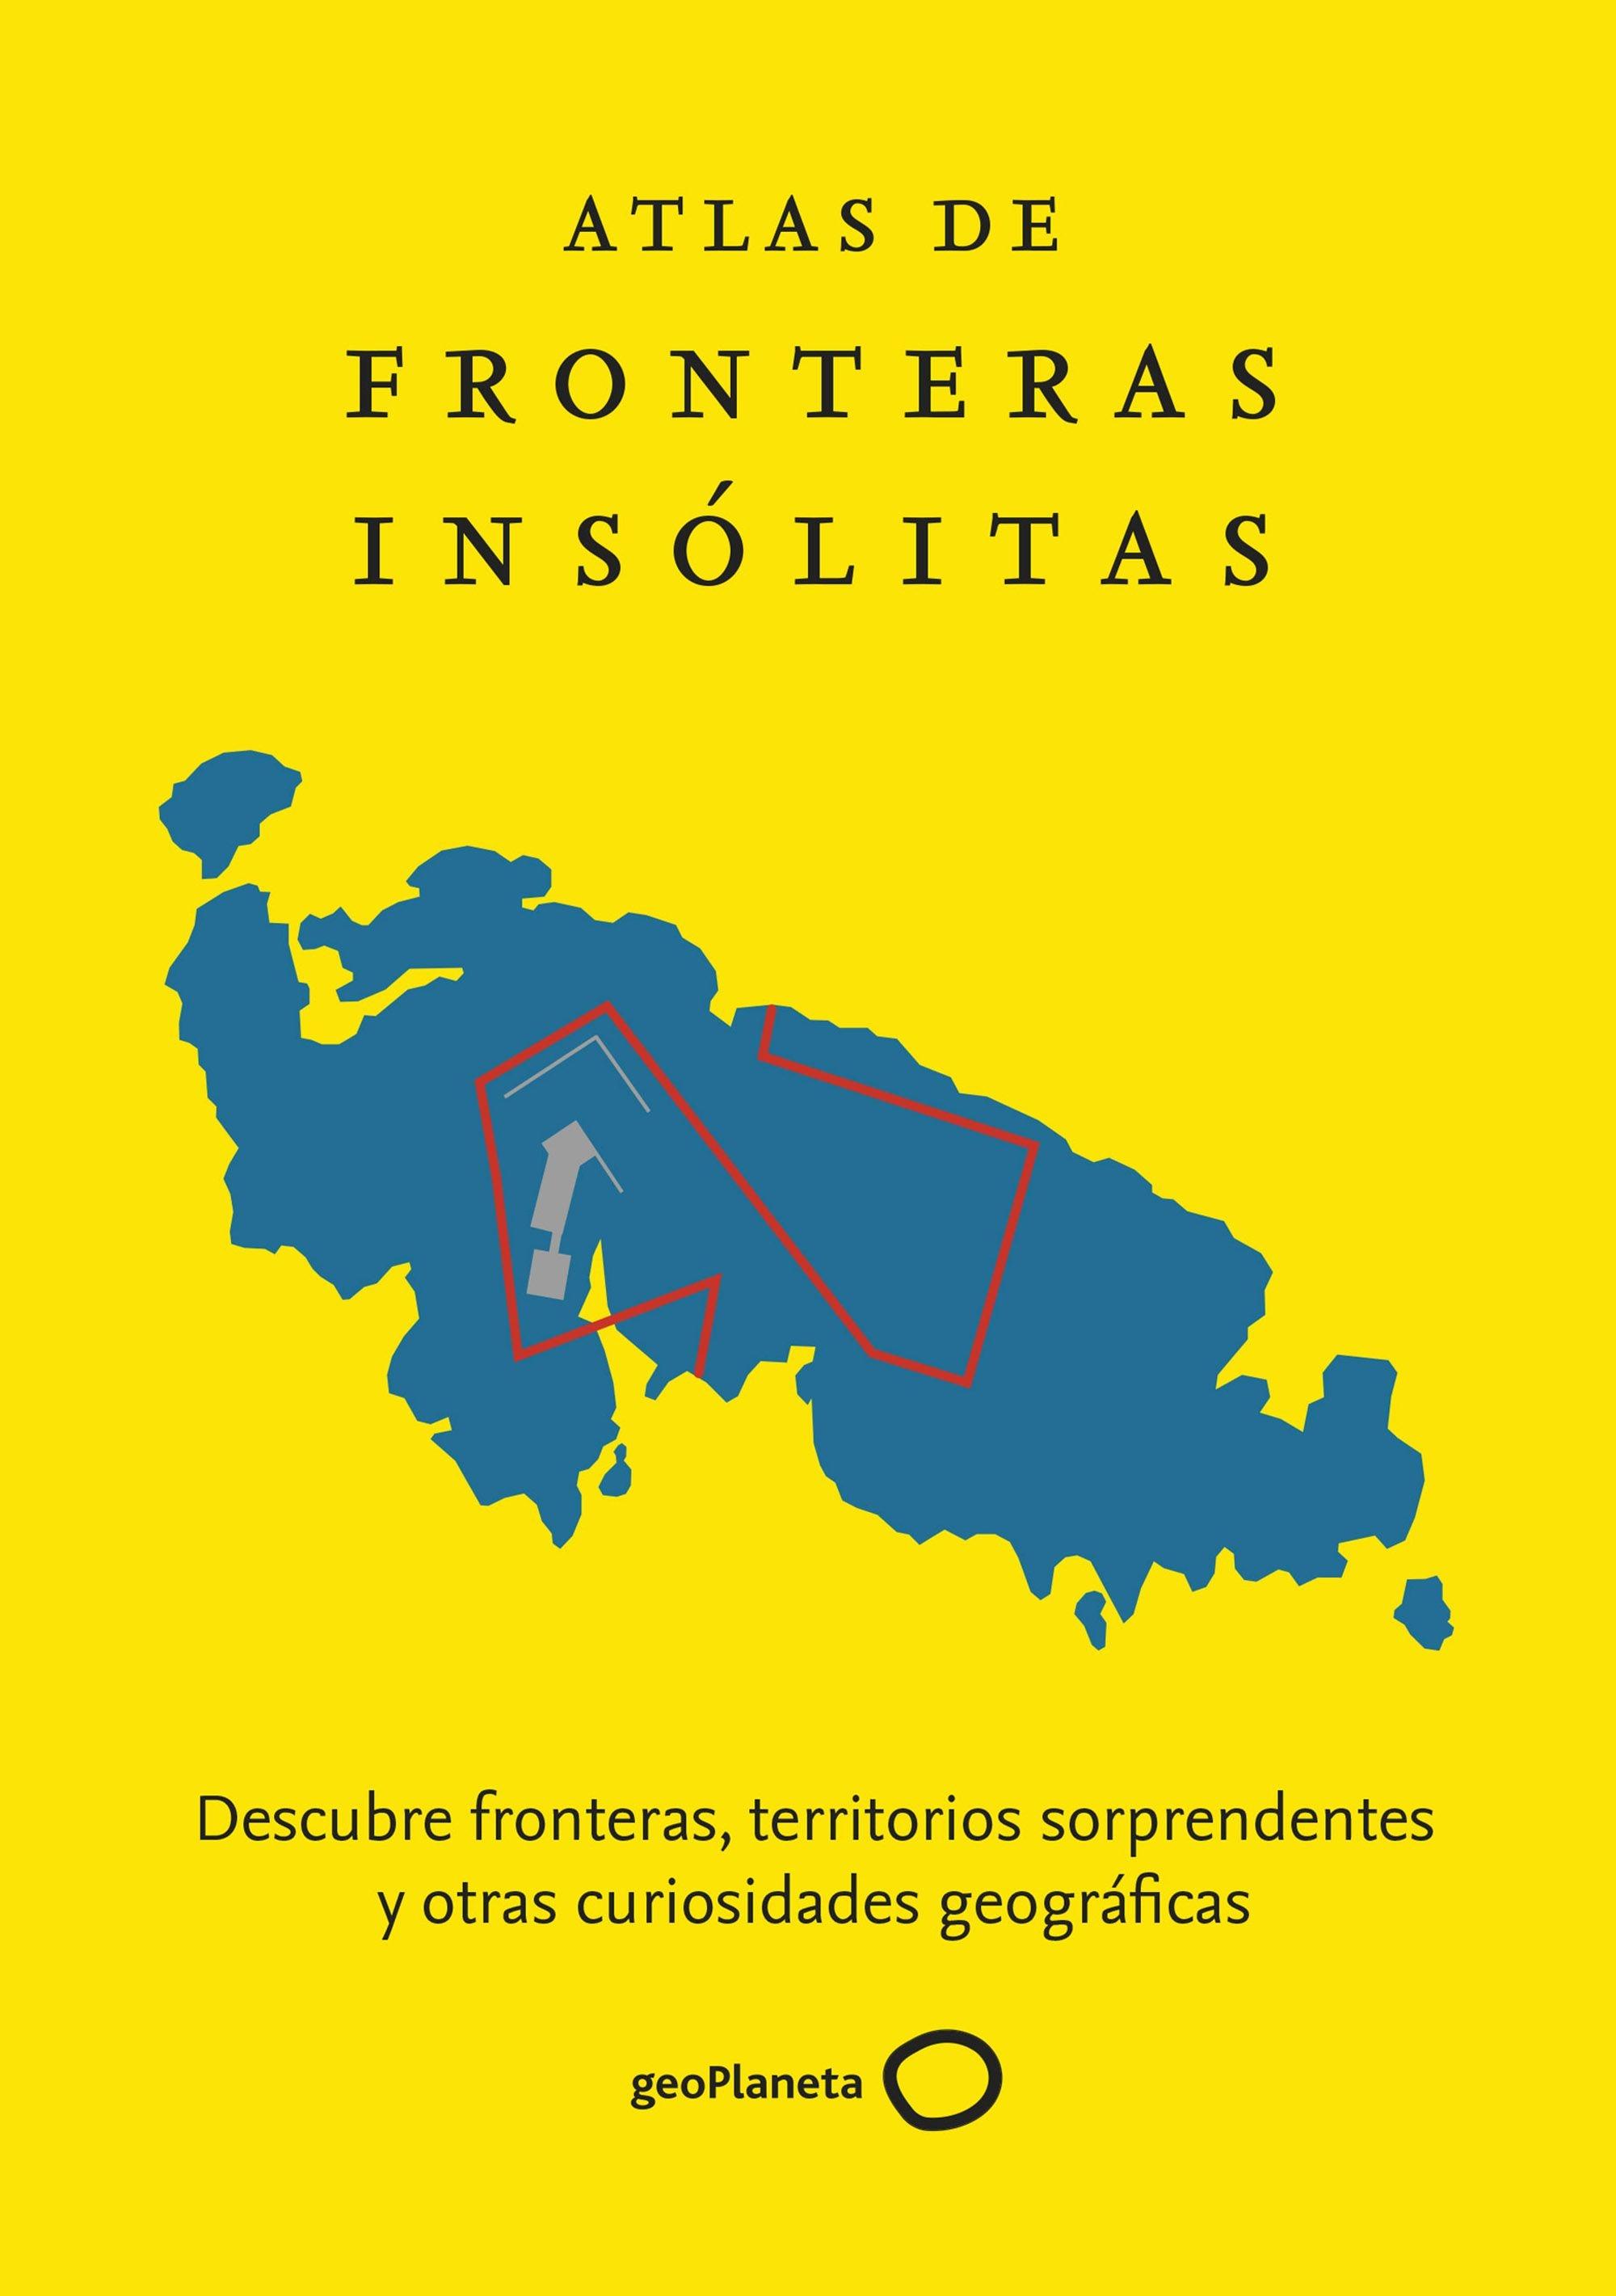 Atlas de fronteras insólitas